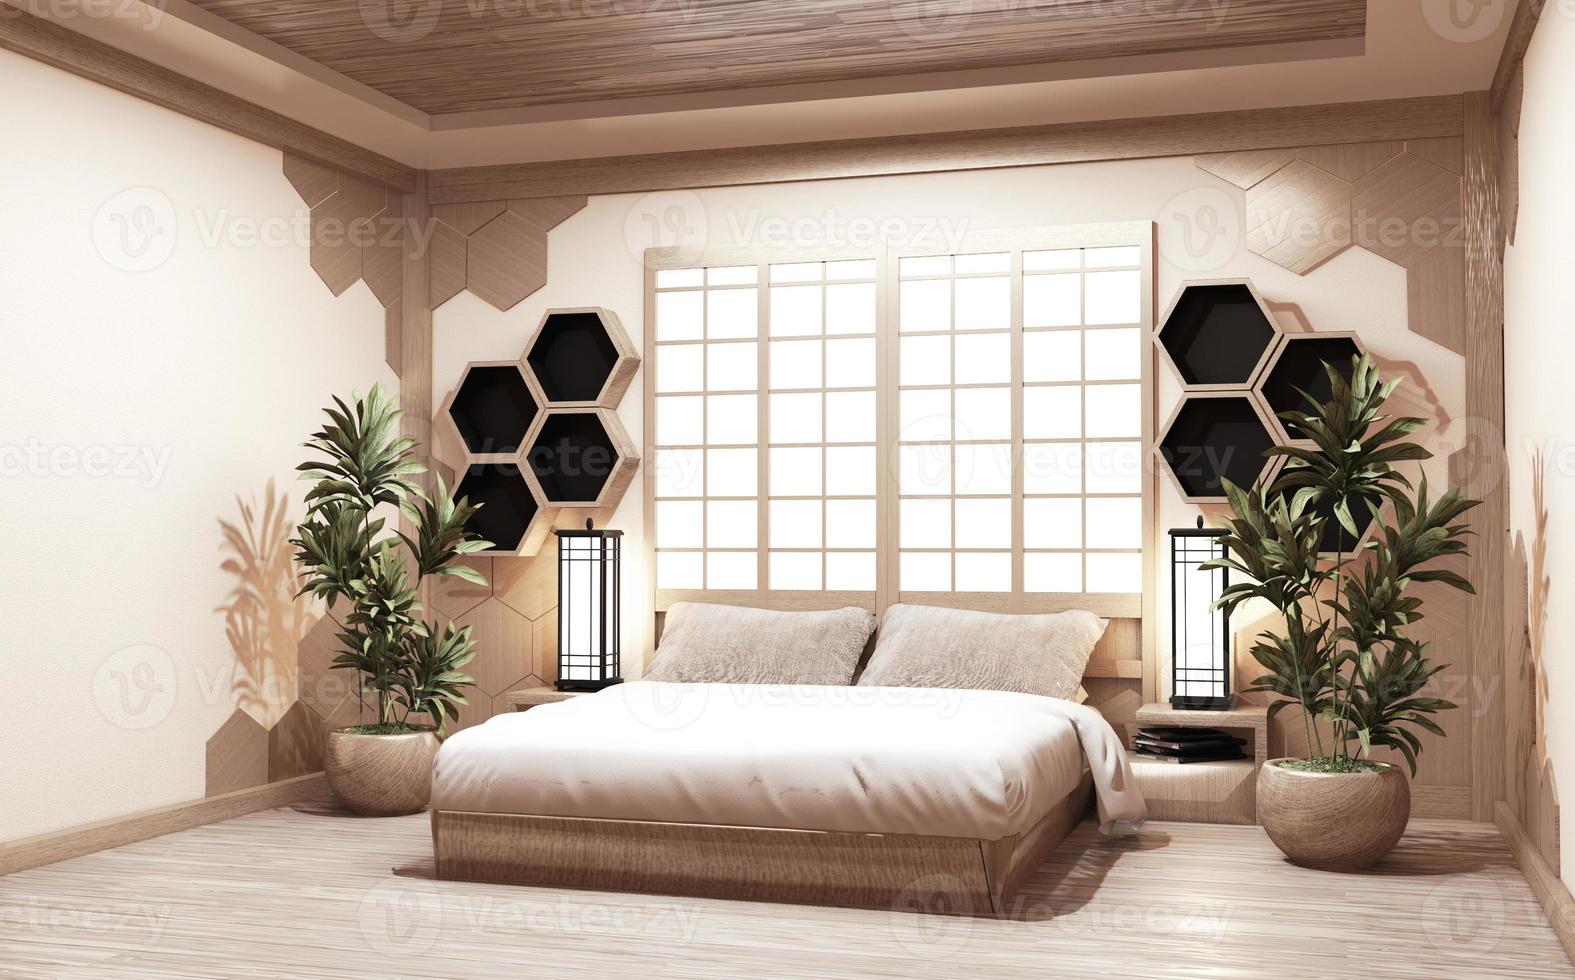 hexagon hylla trä stil på väggen sovrum japansk stil med växter och lamp dekoration på trä floor.3d rednering foto